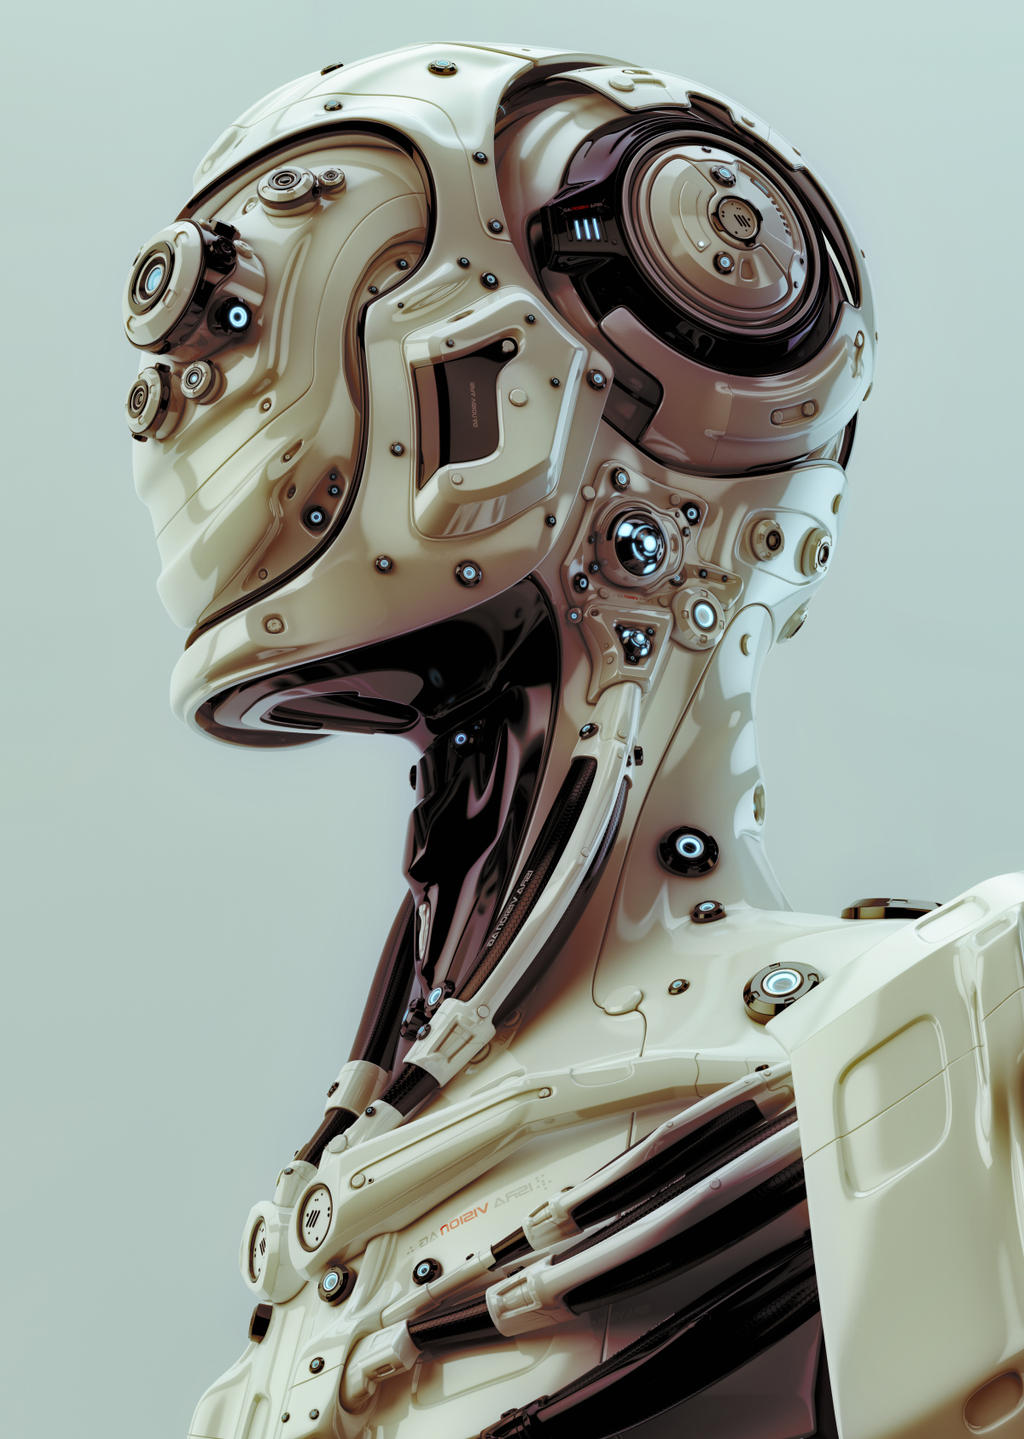 futuristic_robotic_man_by_ociacia-d7341s